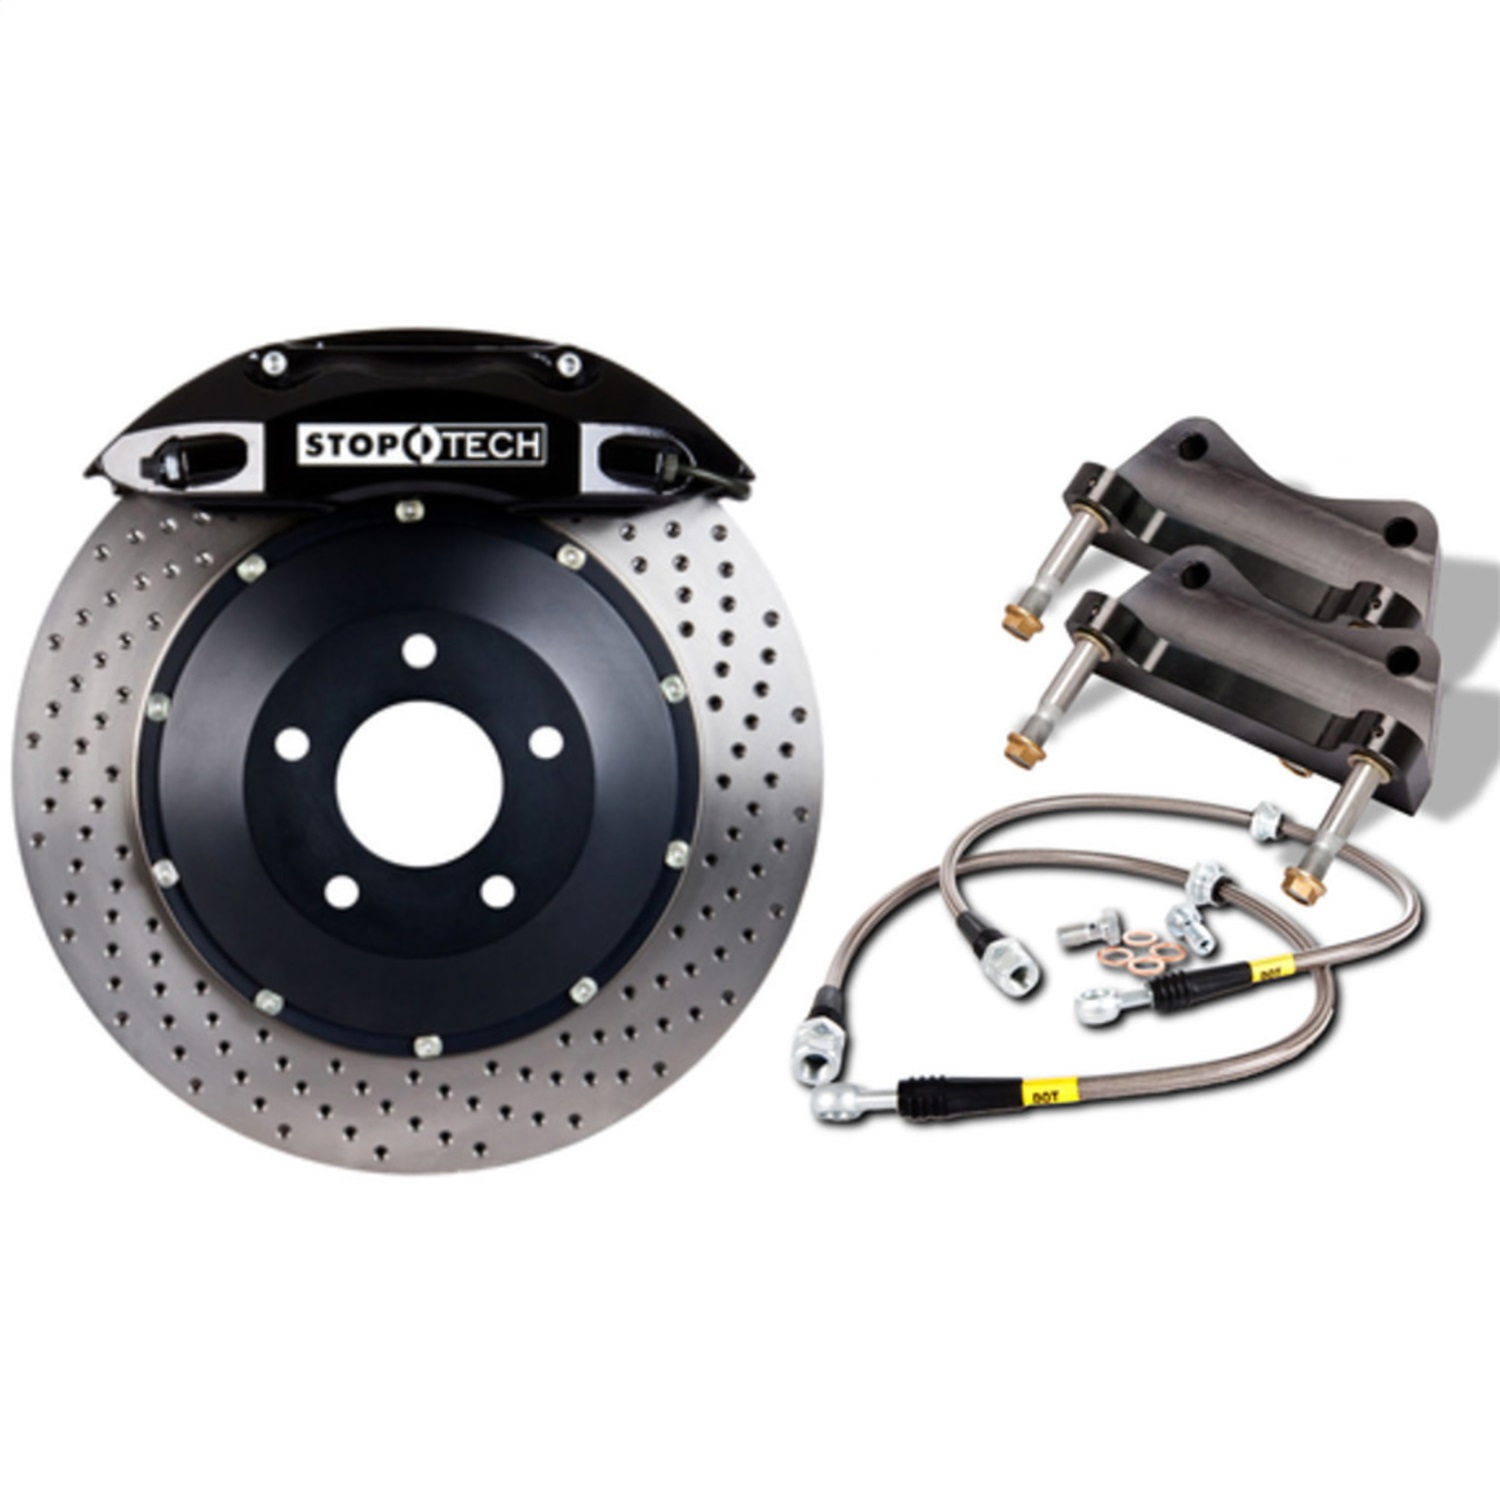 StopTech 83.137.0047.52 Big Brake Kit w/2 Piece Rotors Fits 01-06 M3